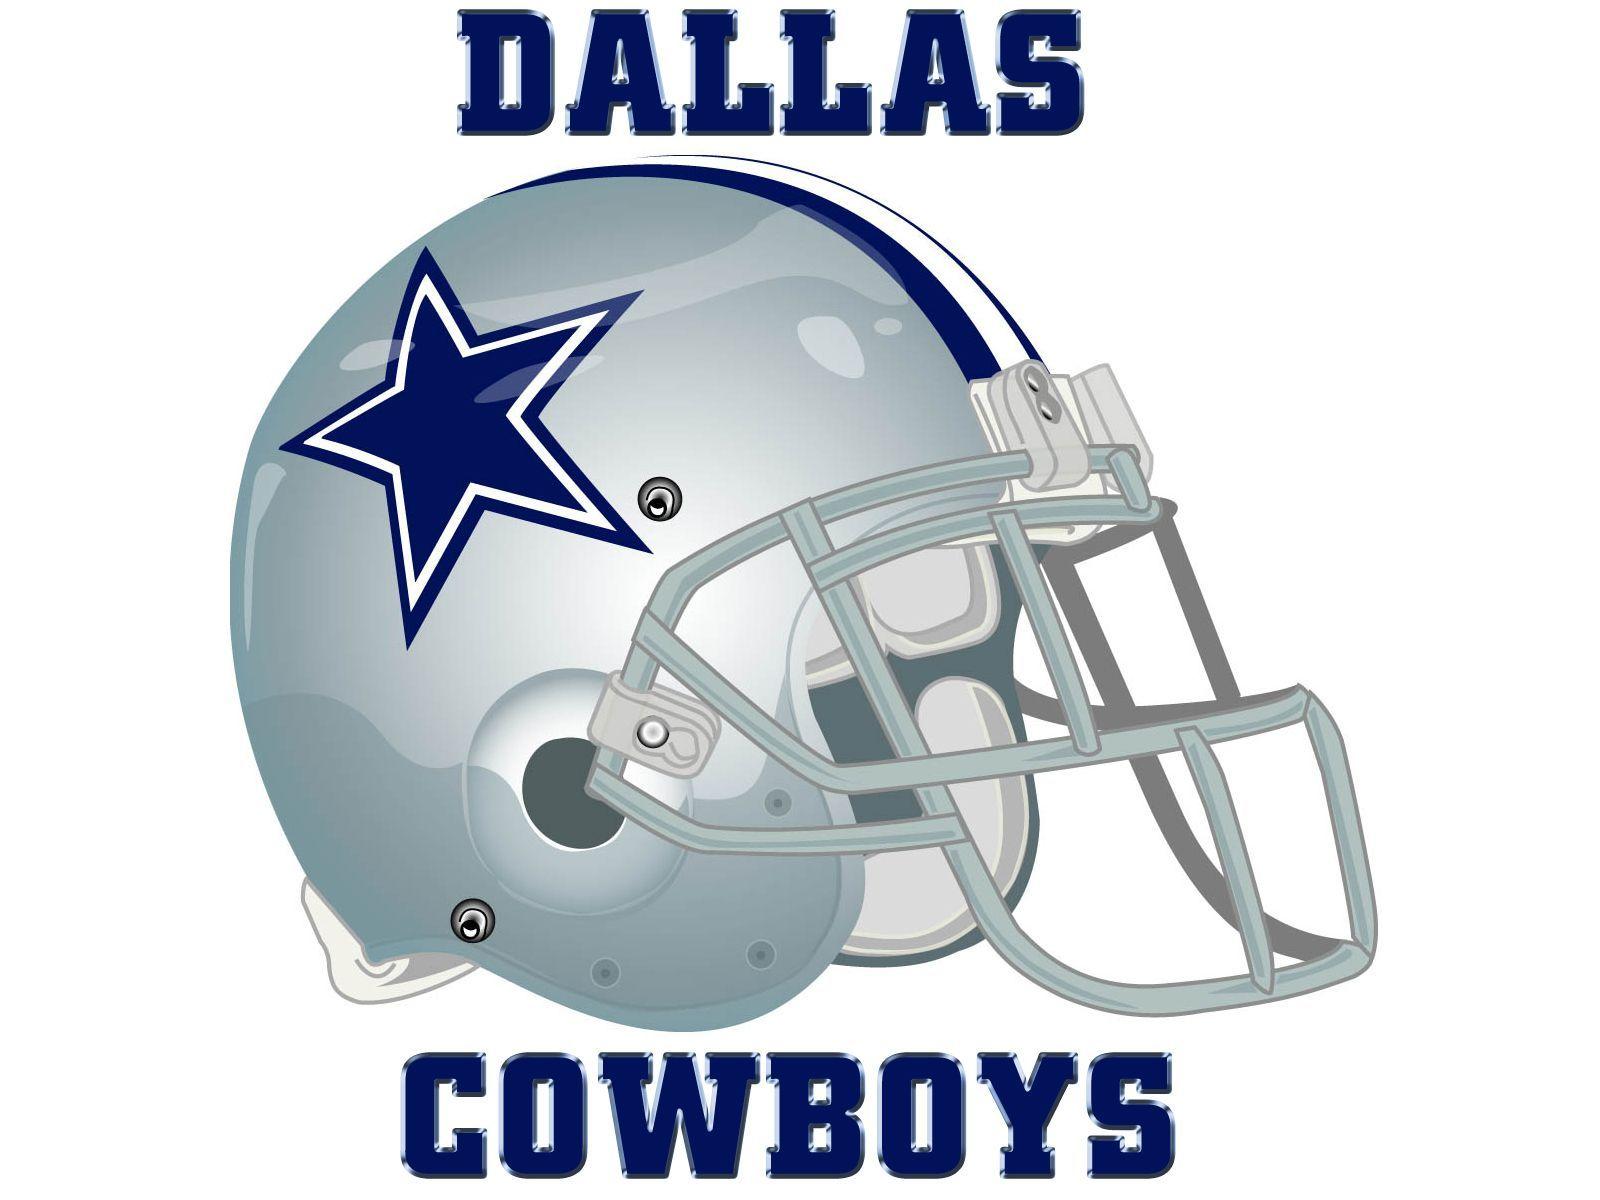 Free Dallas Cowboys desktop wallpaper. Dallas Cowboys wallpaper